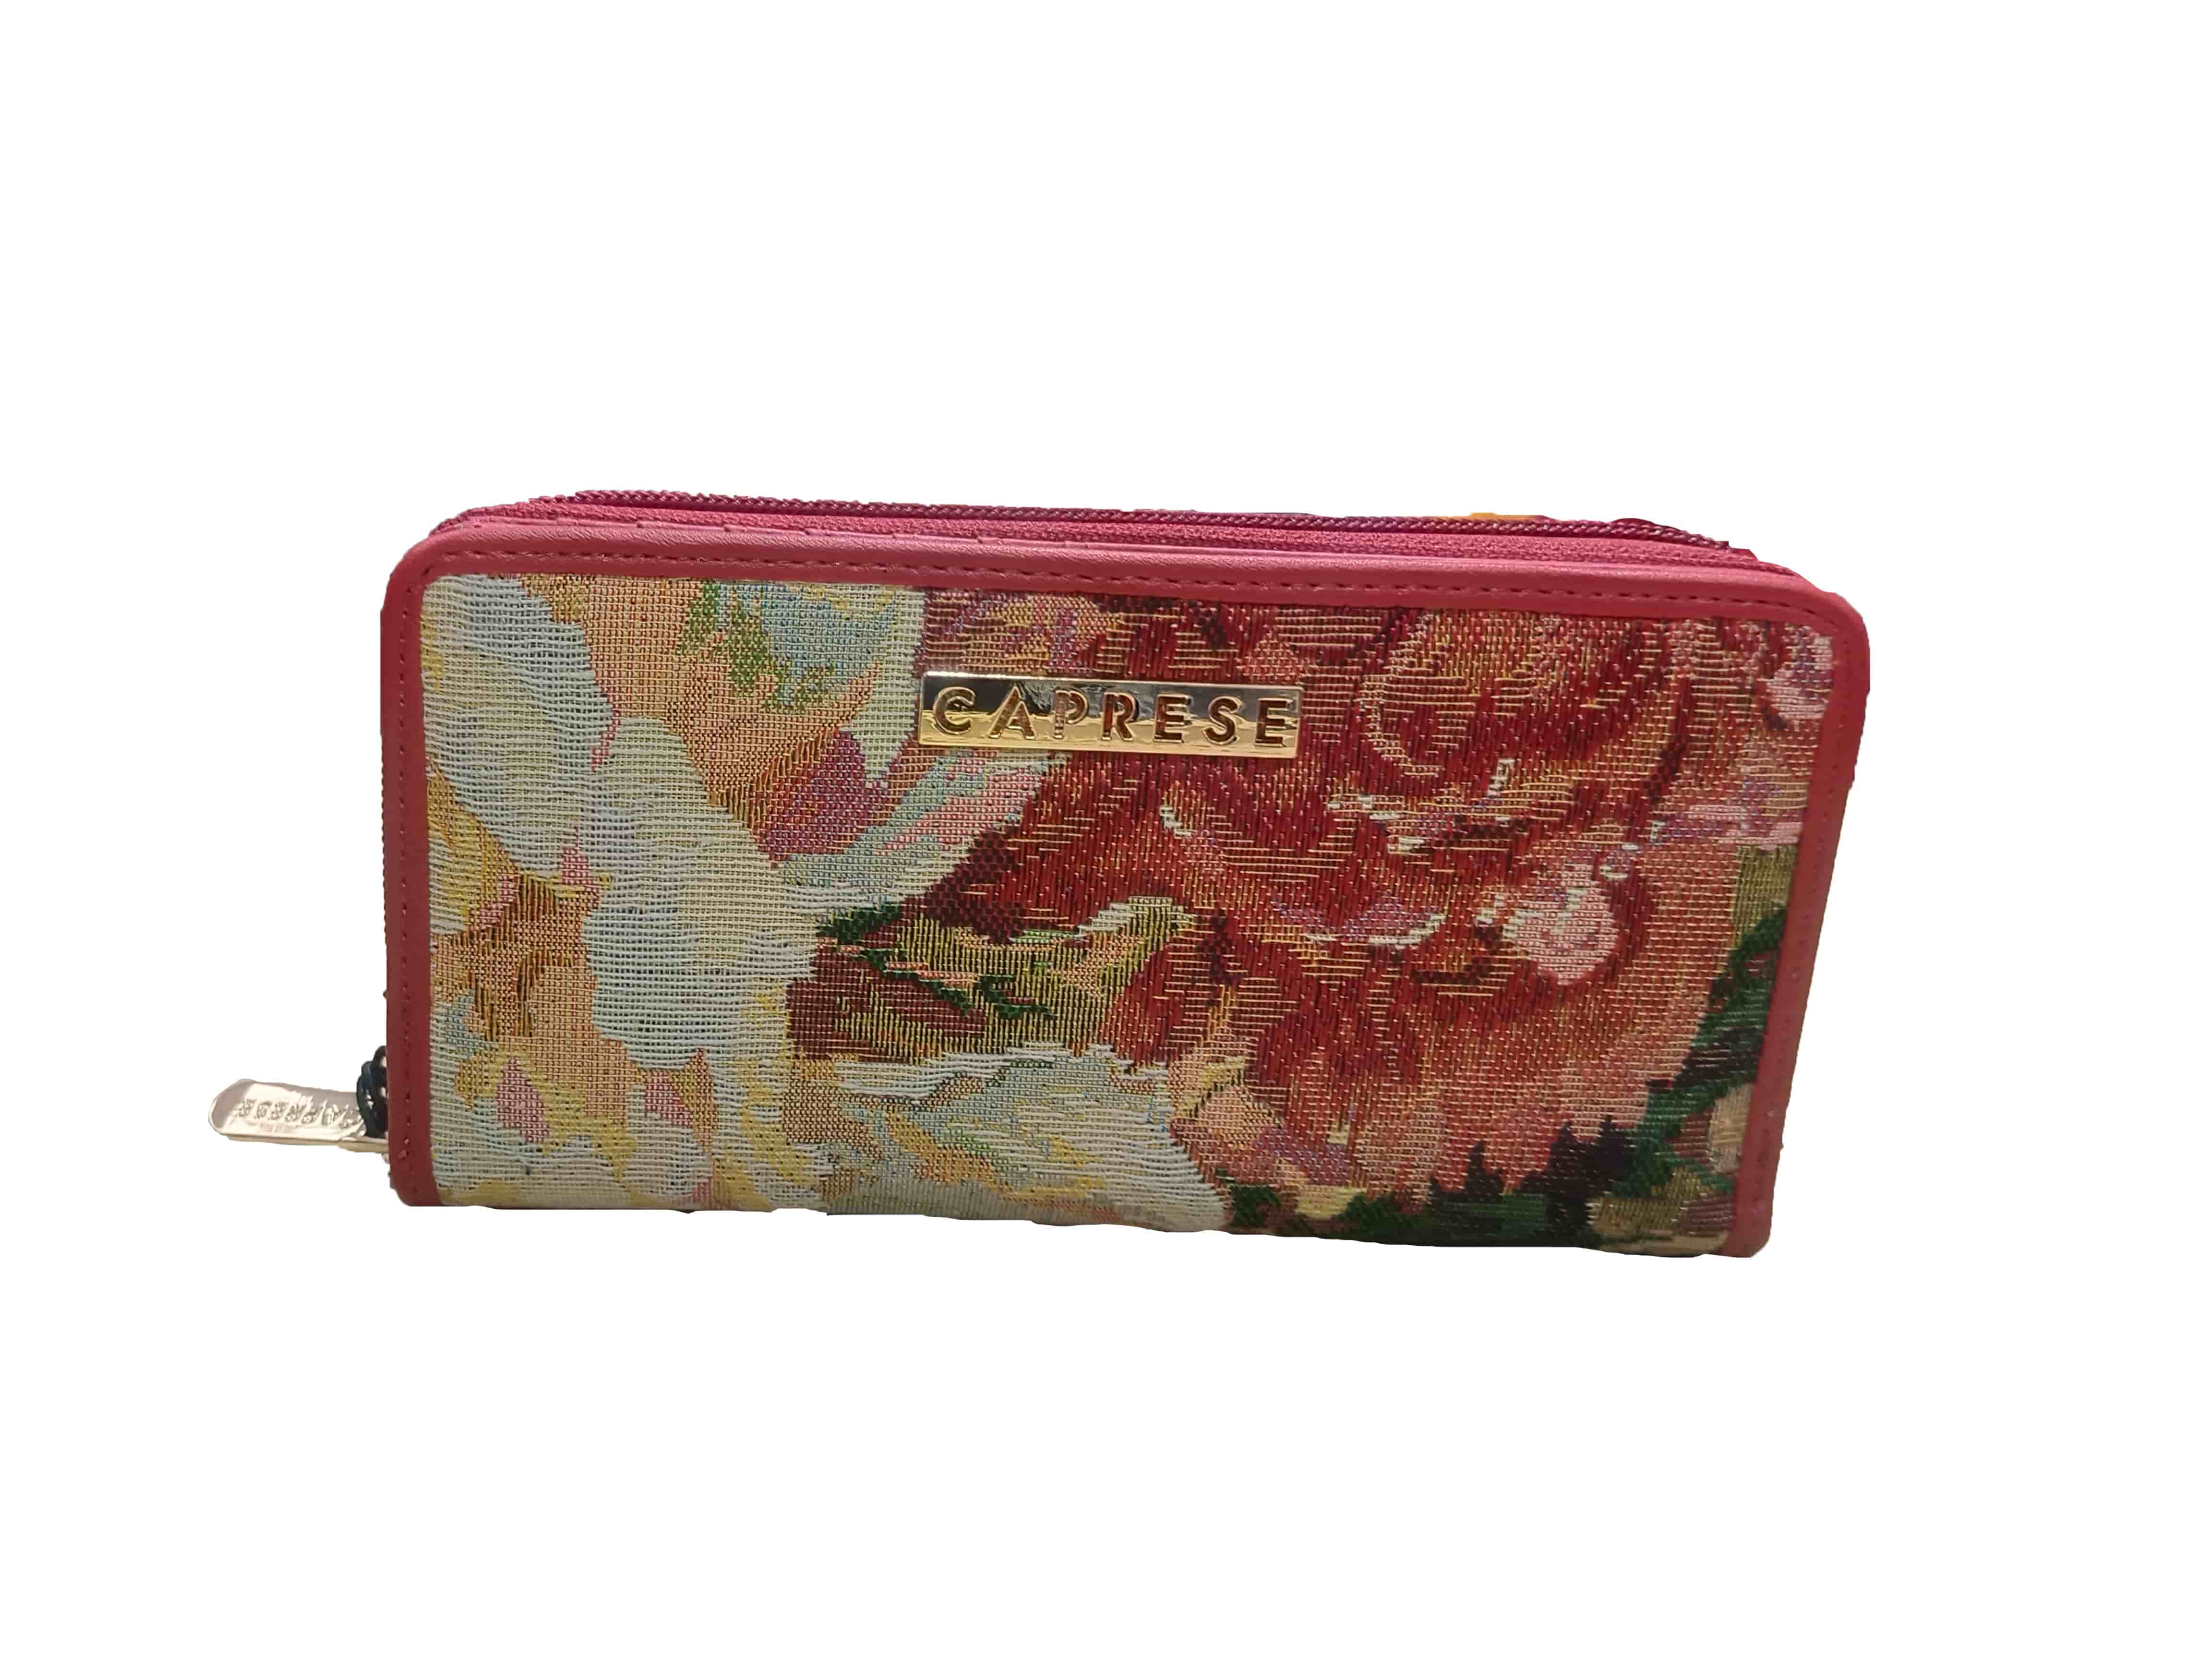 Multicolored purse